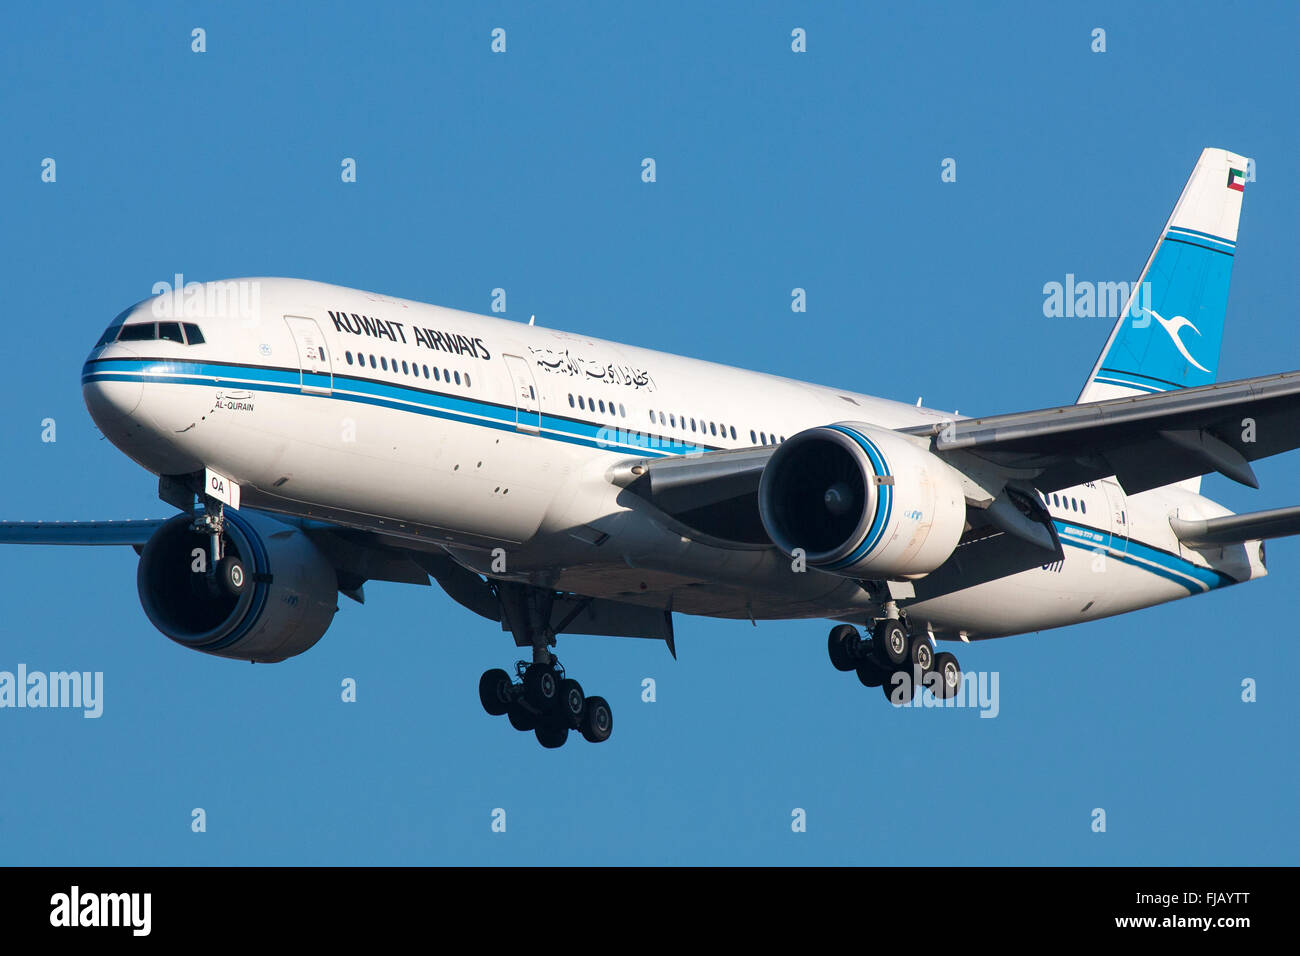 Kuwait Airways Boeing 777 Stock Photo